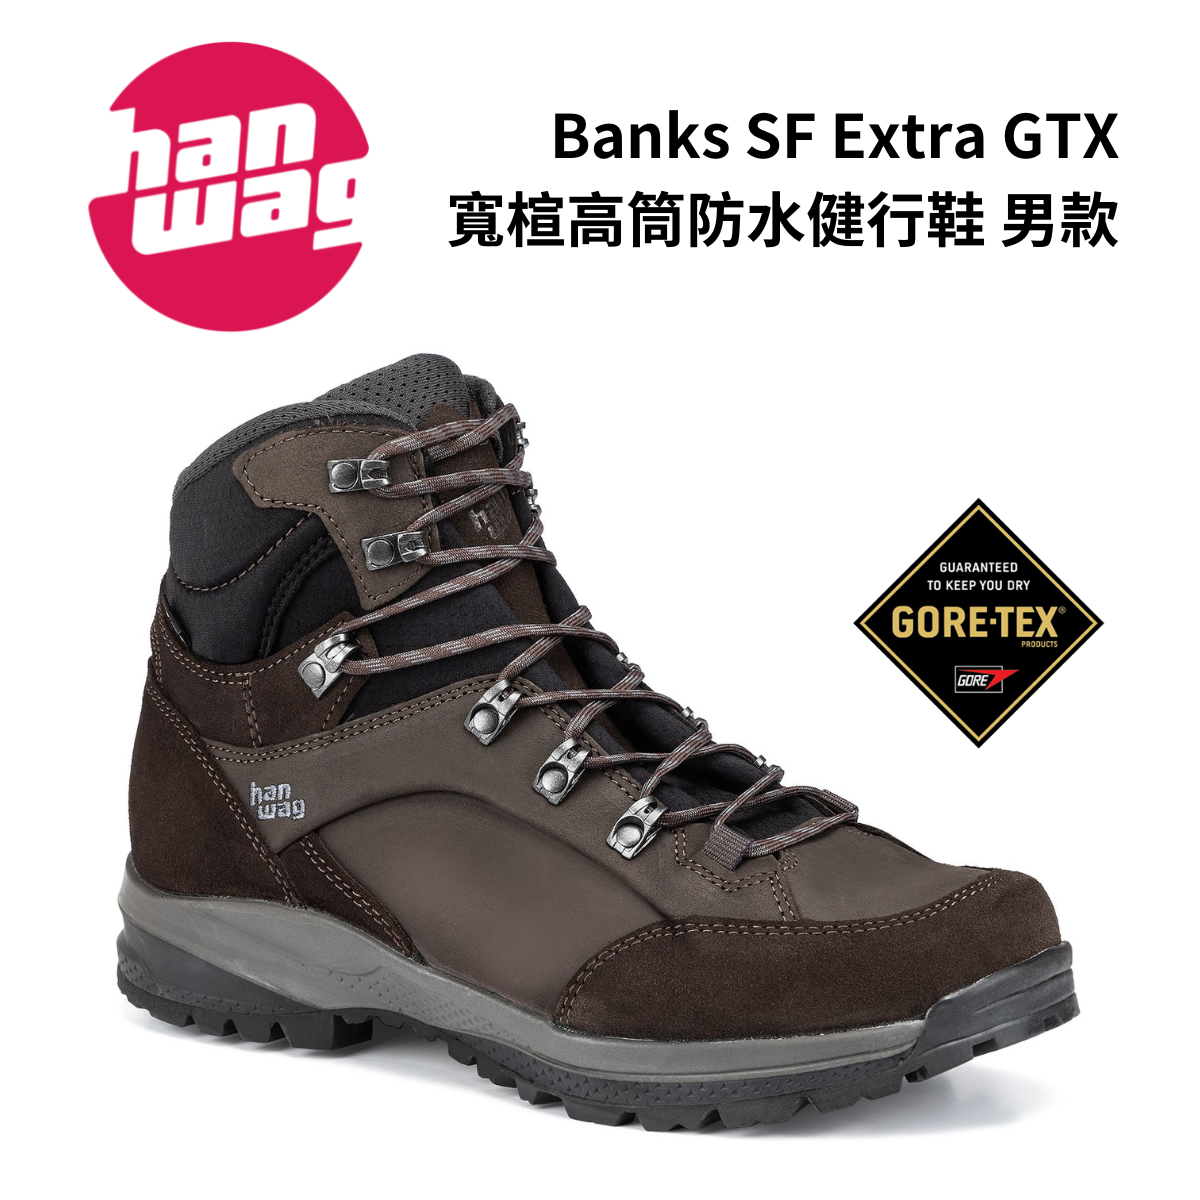 【Hanwag】Banks SF Extra GTX 男款 寬楦高筒防水健行鞋 摩卡/瀝青灰